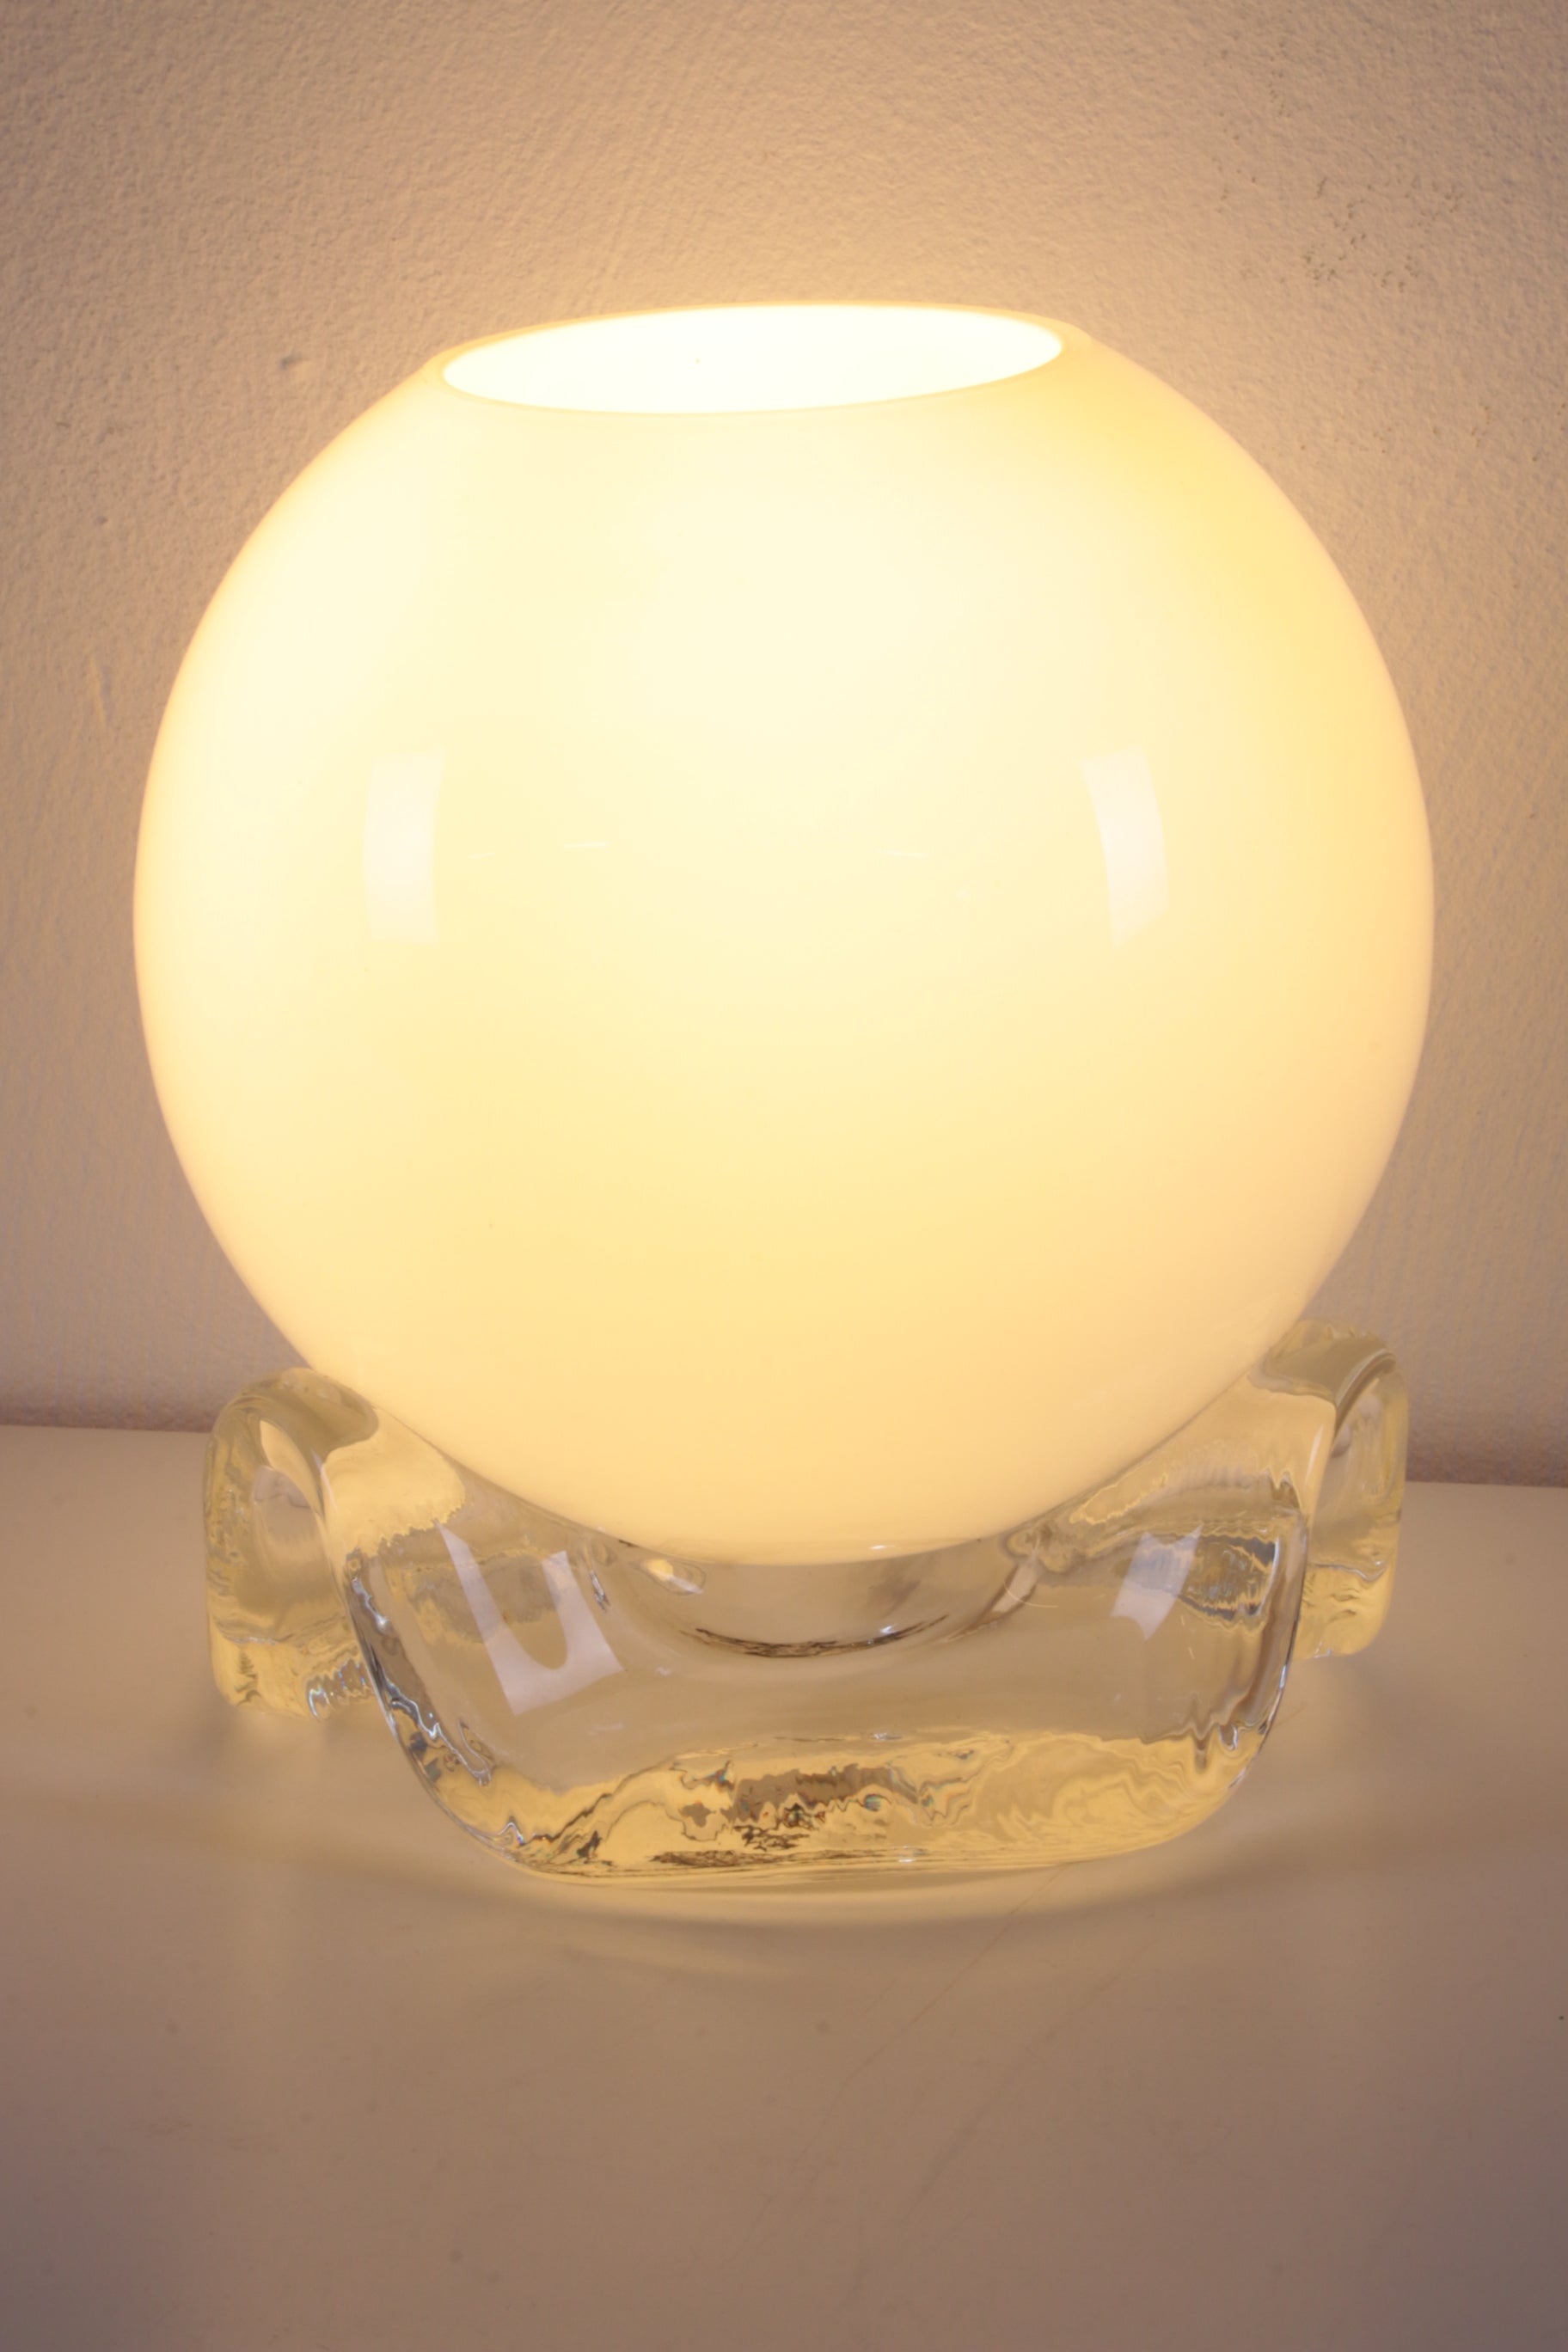 Vintage Wit Glazen Tafellampje van het merk Limburg jaren 60s voorkant licht aan